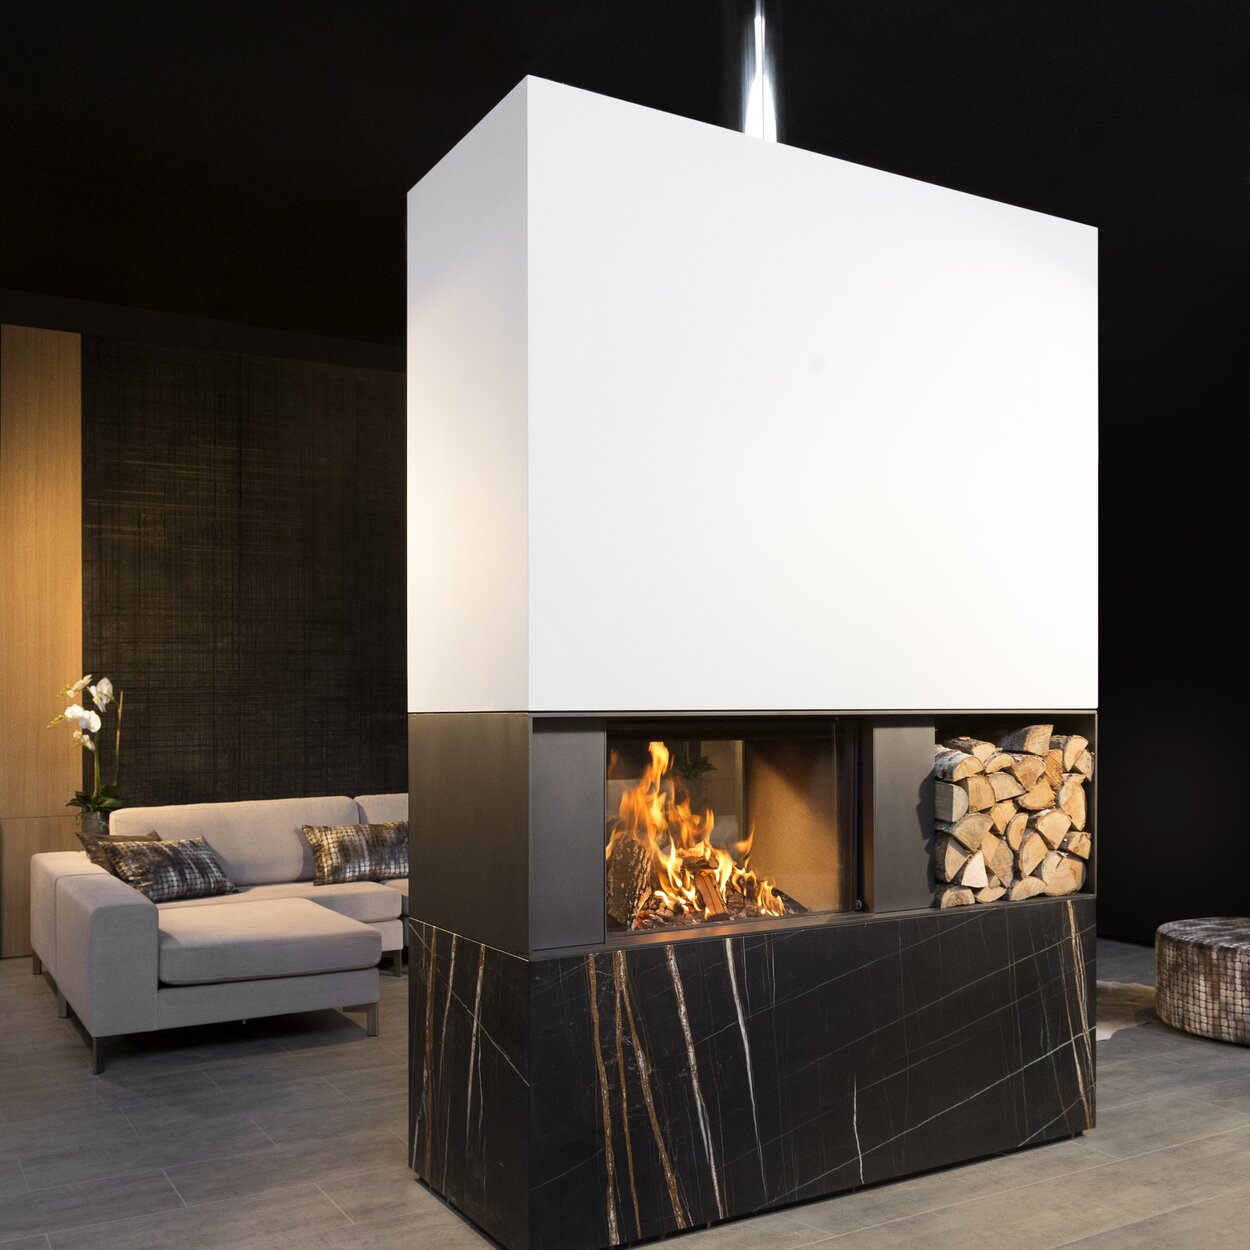 Holz-Kamin W80/52T von Kalfire als Raumteiler mit praktischer integrierter Holzablage in modernem Wohnraum